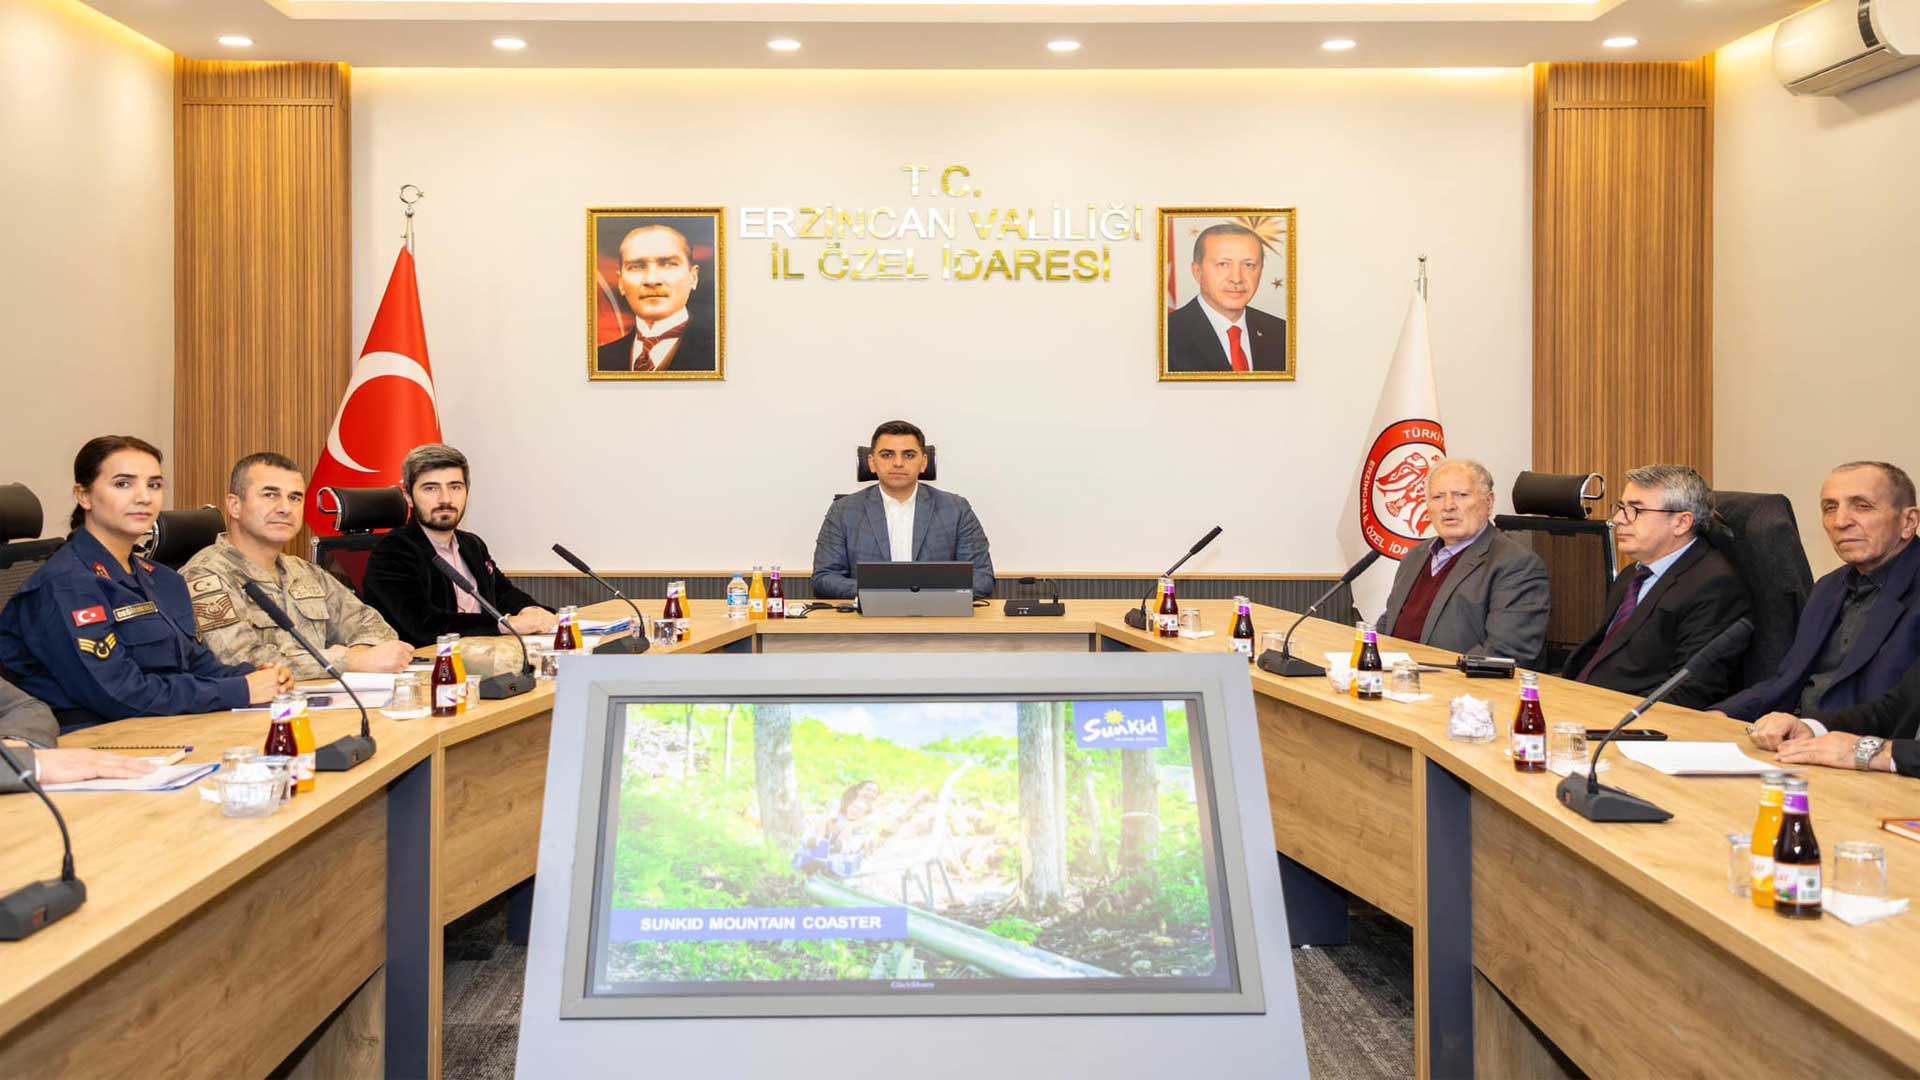 Erzincan Mahalli Çevre Kurulu Toplantısı Yapıldı1